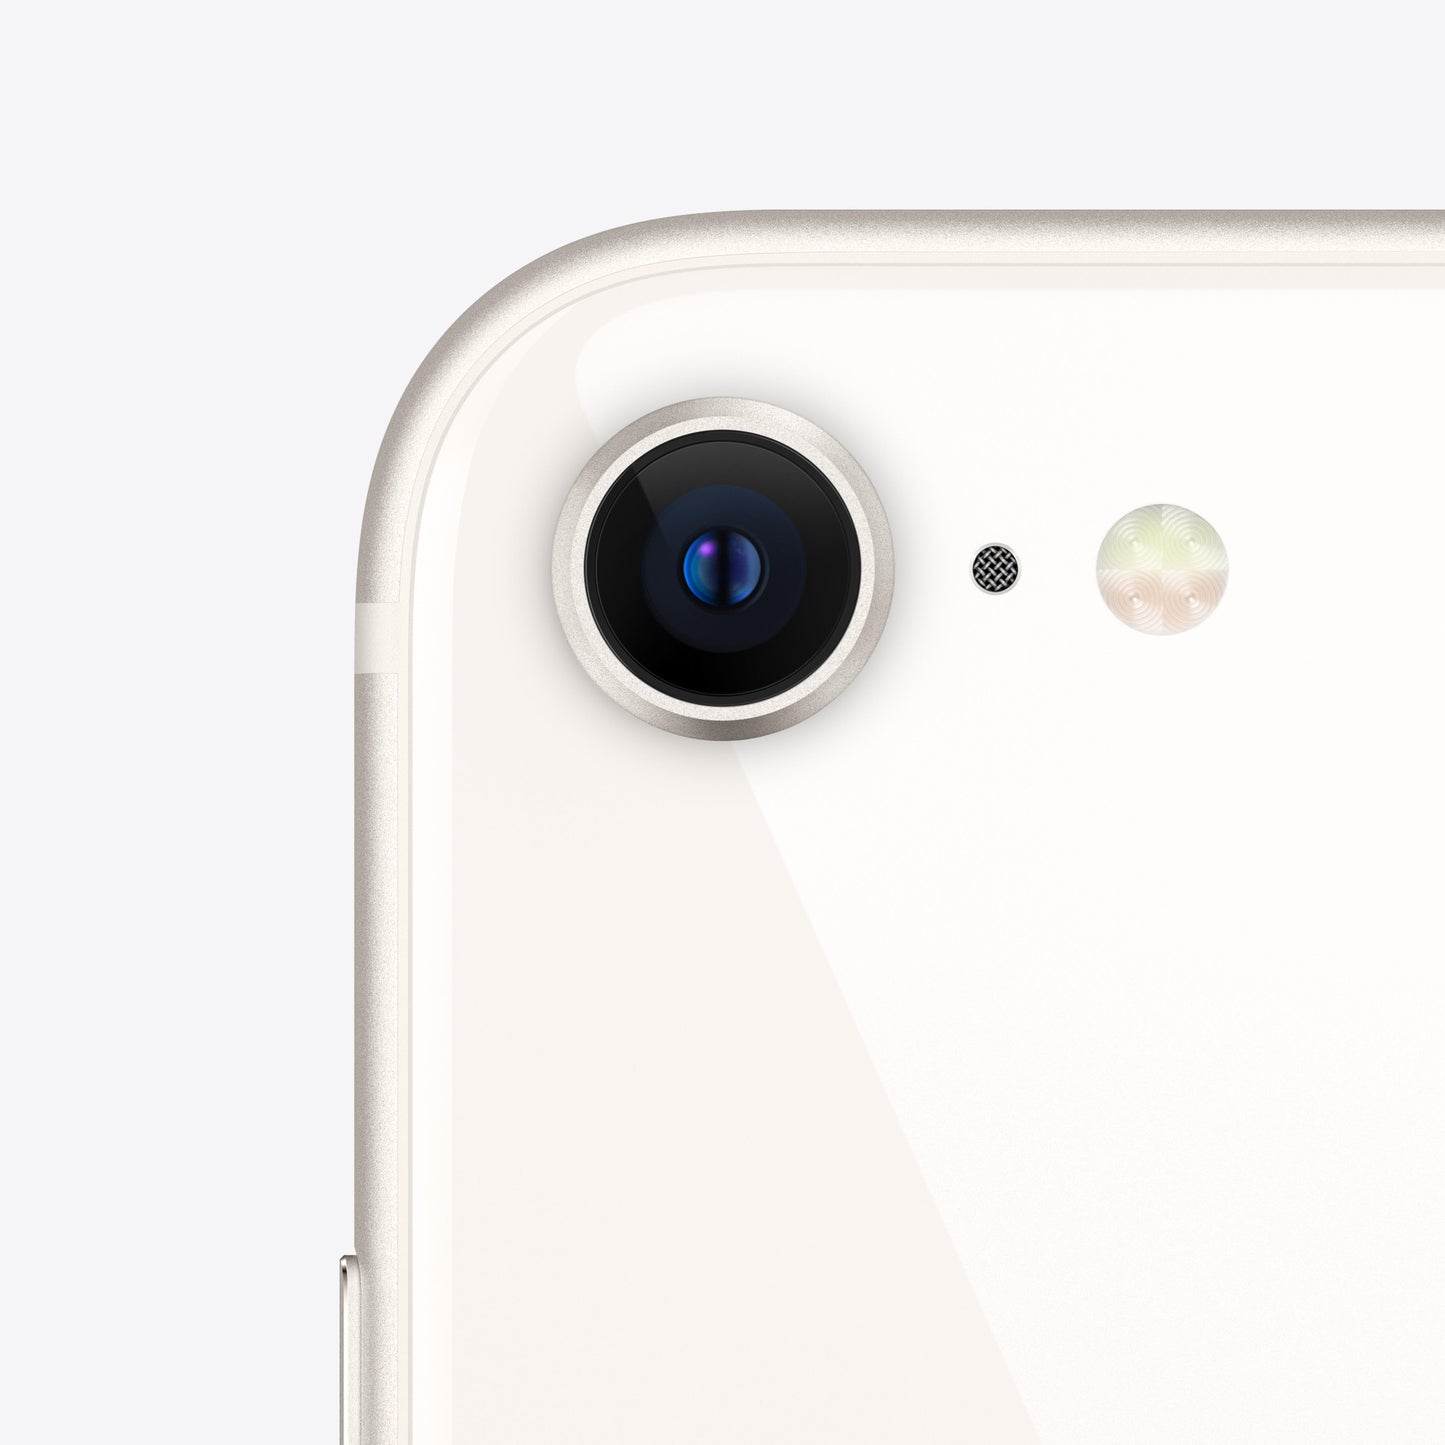 iPhone SE (3.ª generación) 64 GB Blanco estrella - Rossellimac